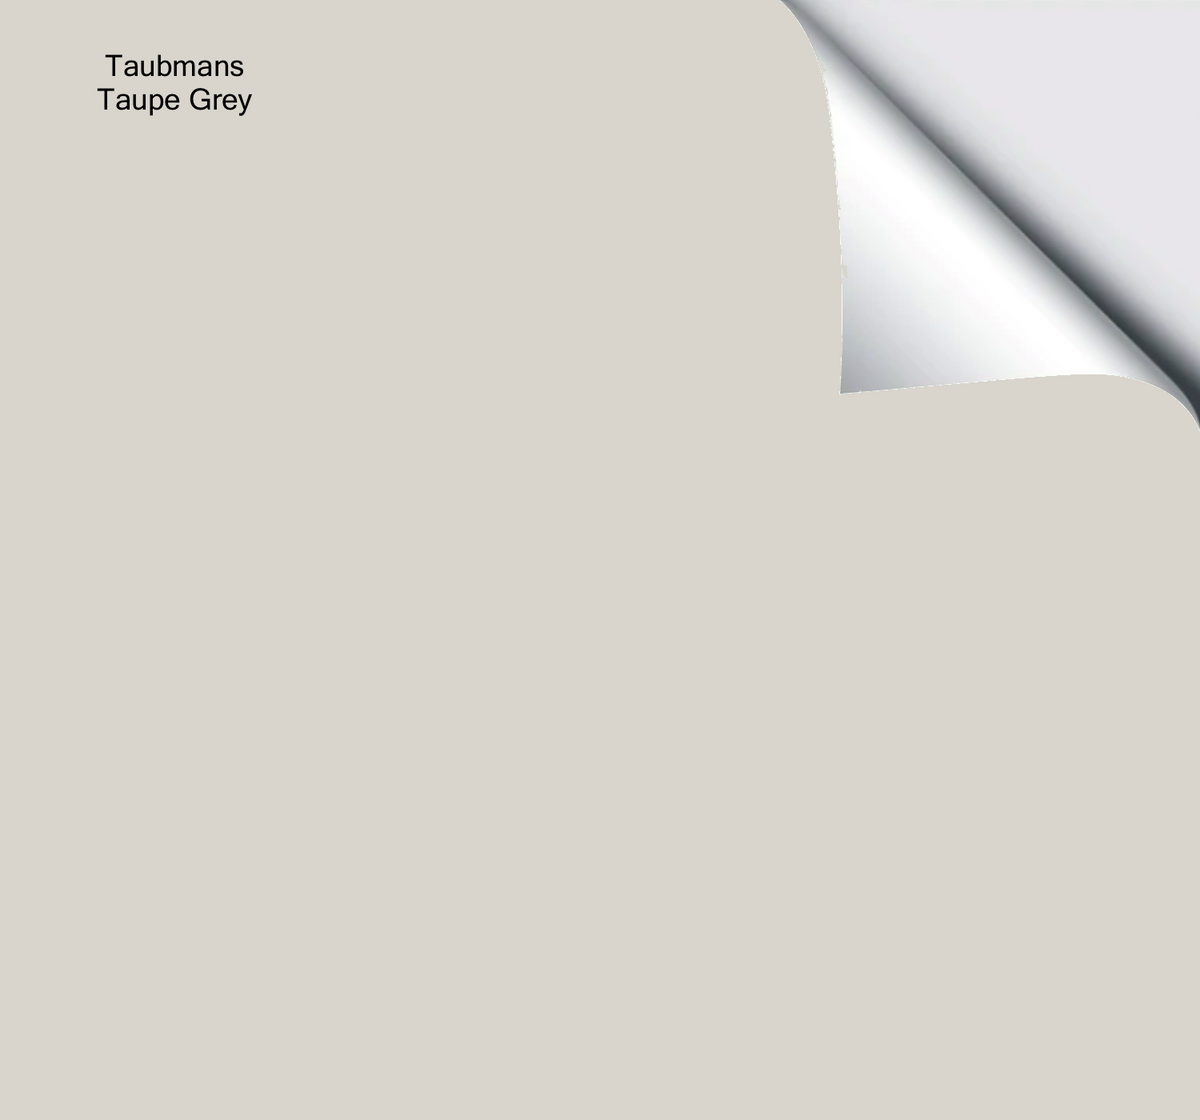 Taupe grey T15 13.3 Paint Colour - Taubmans Paint